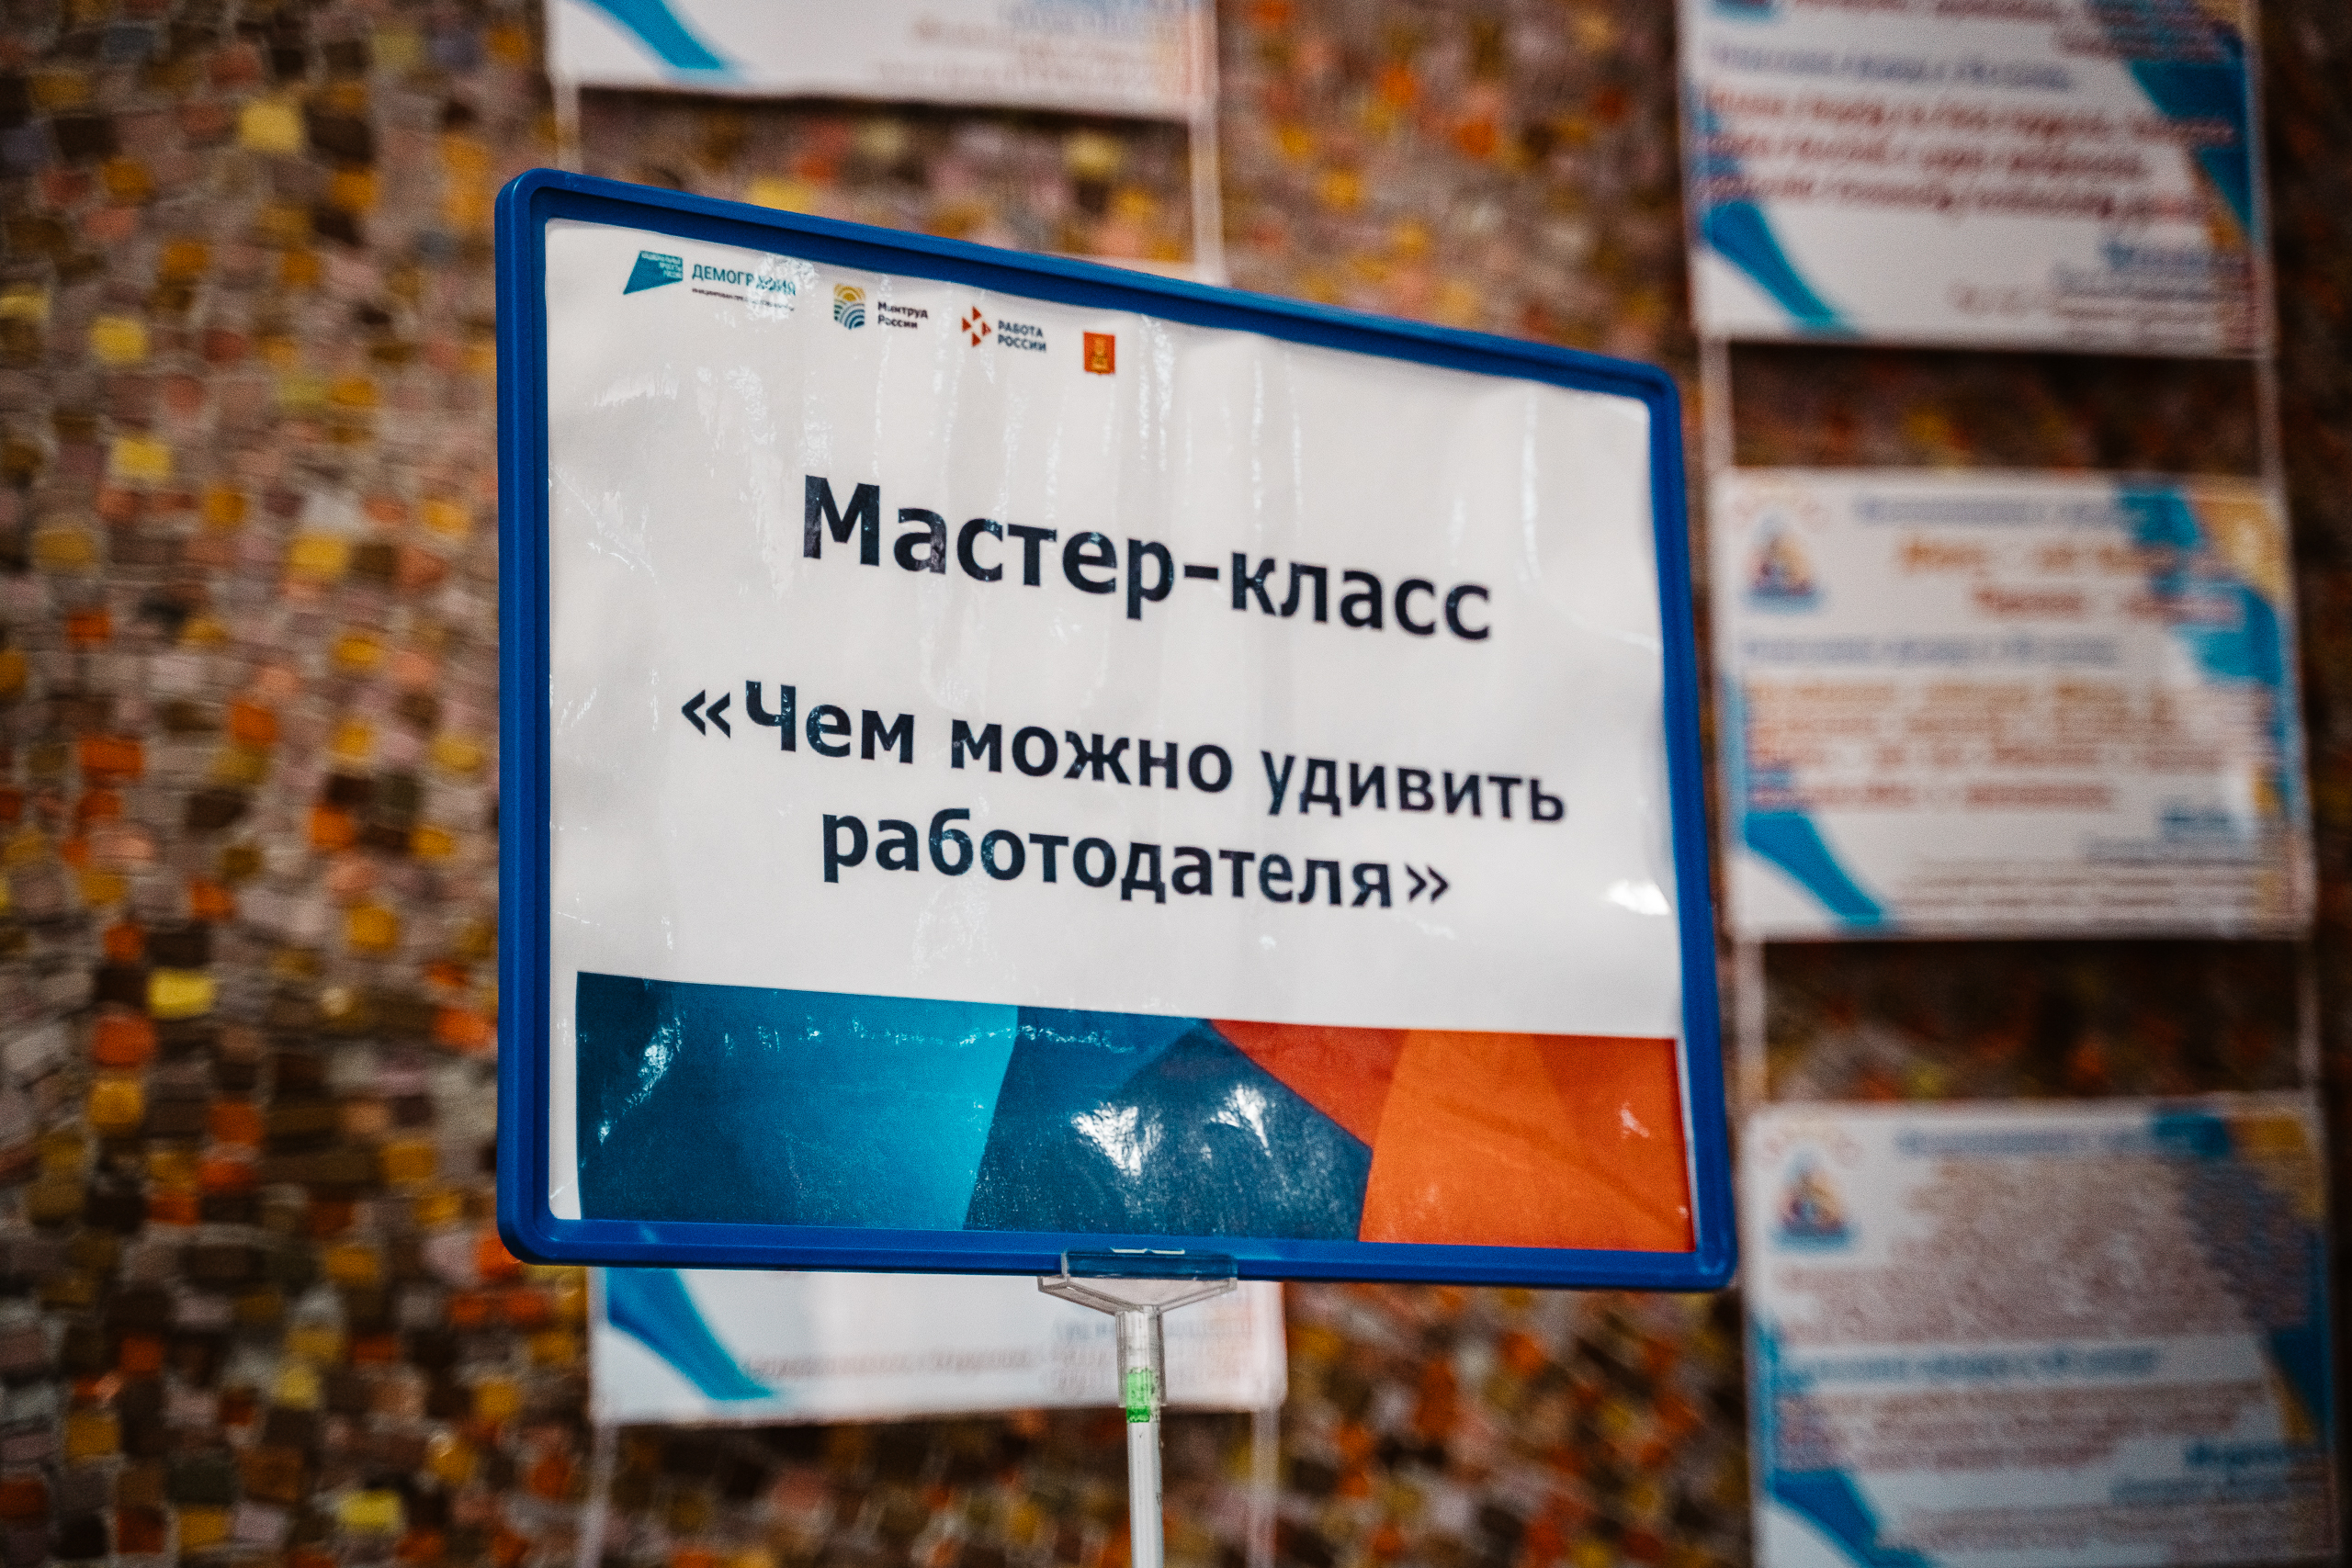 Больше 4 тысяч вакансий предложили жителям Тверской области на ярмарке трудоустройства